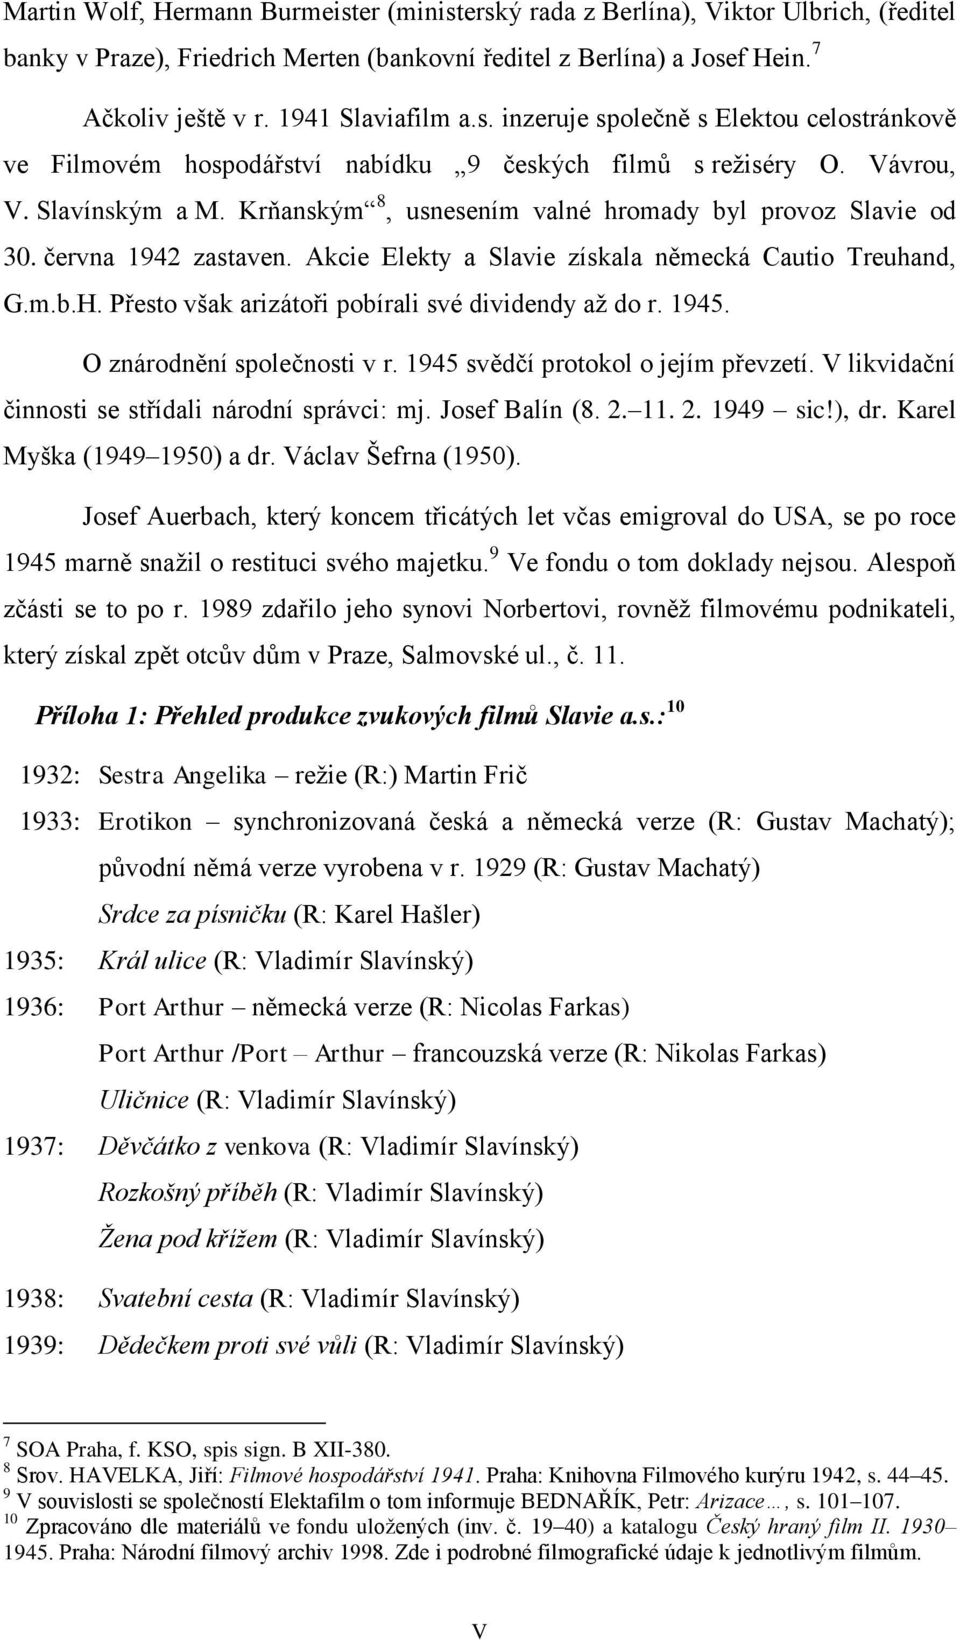 Krňanským 8, usnesením valné hromady byl provoz Slavie od 30. června 1942 zastaven. Akcie Elekty a Slavie získala německá Cautio Treuhand, G.m.b.H.